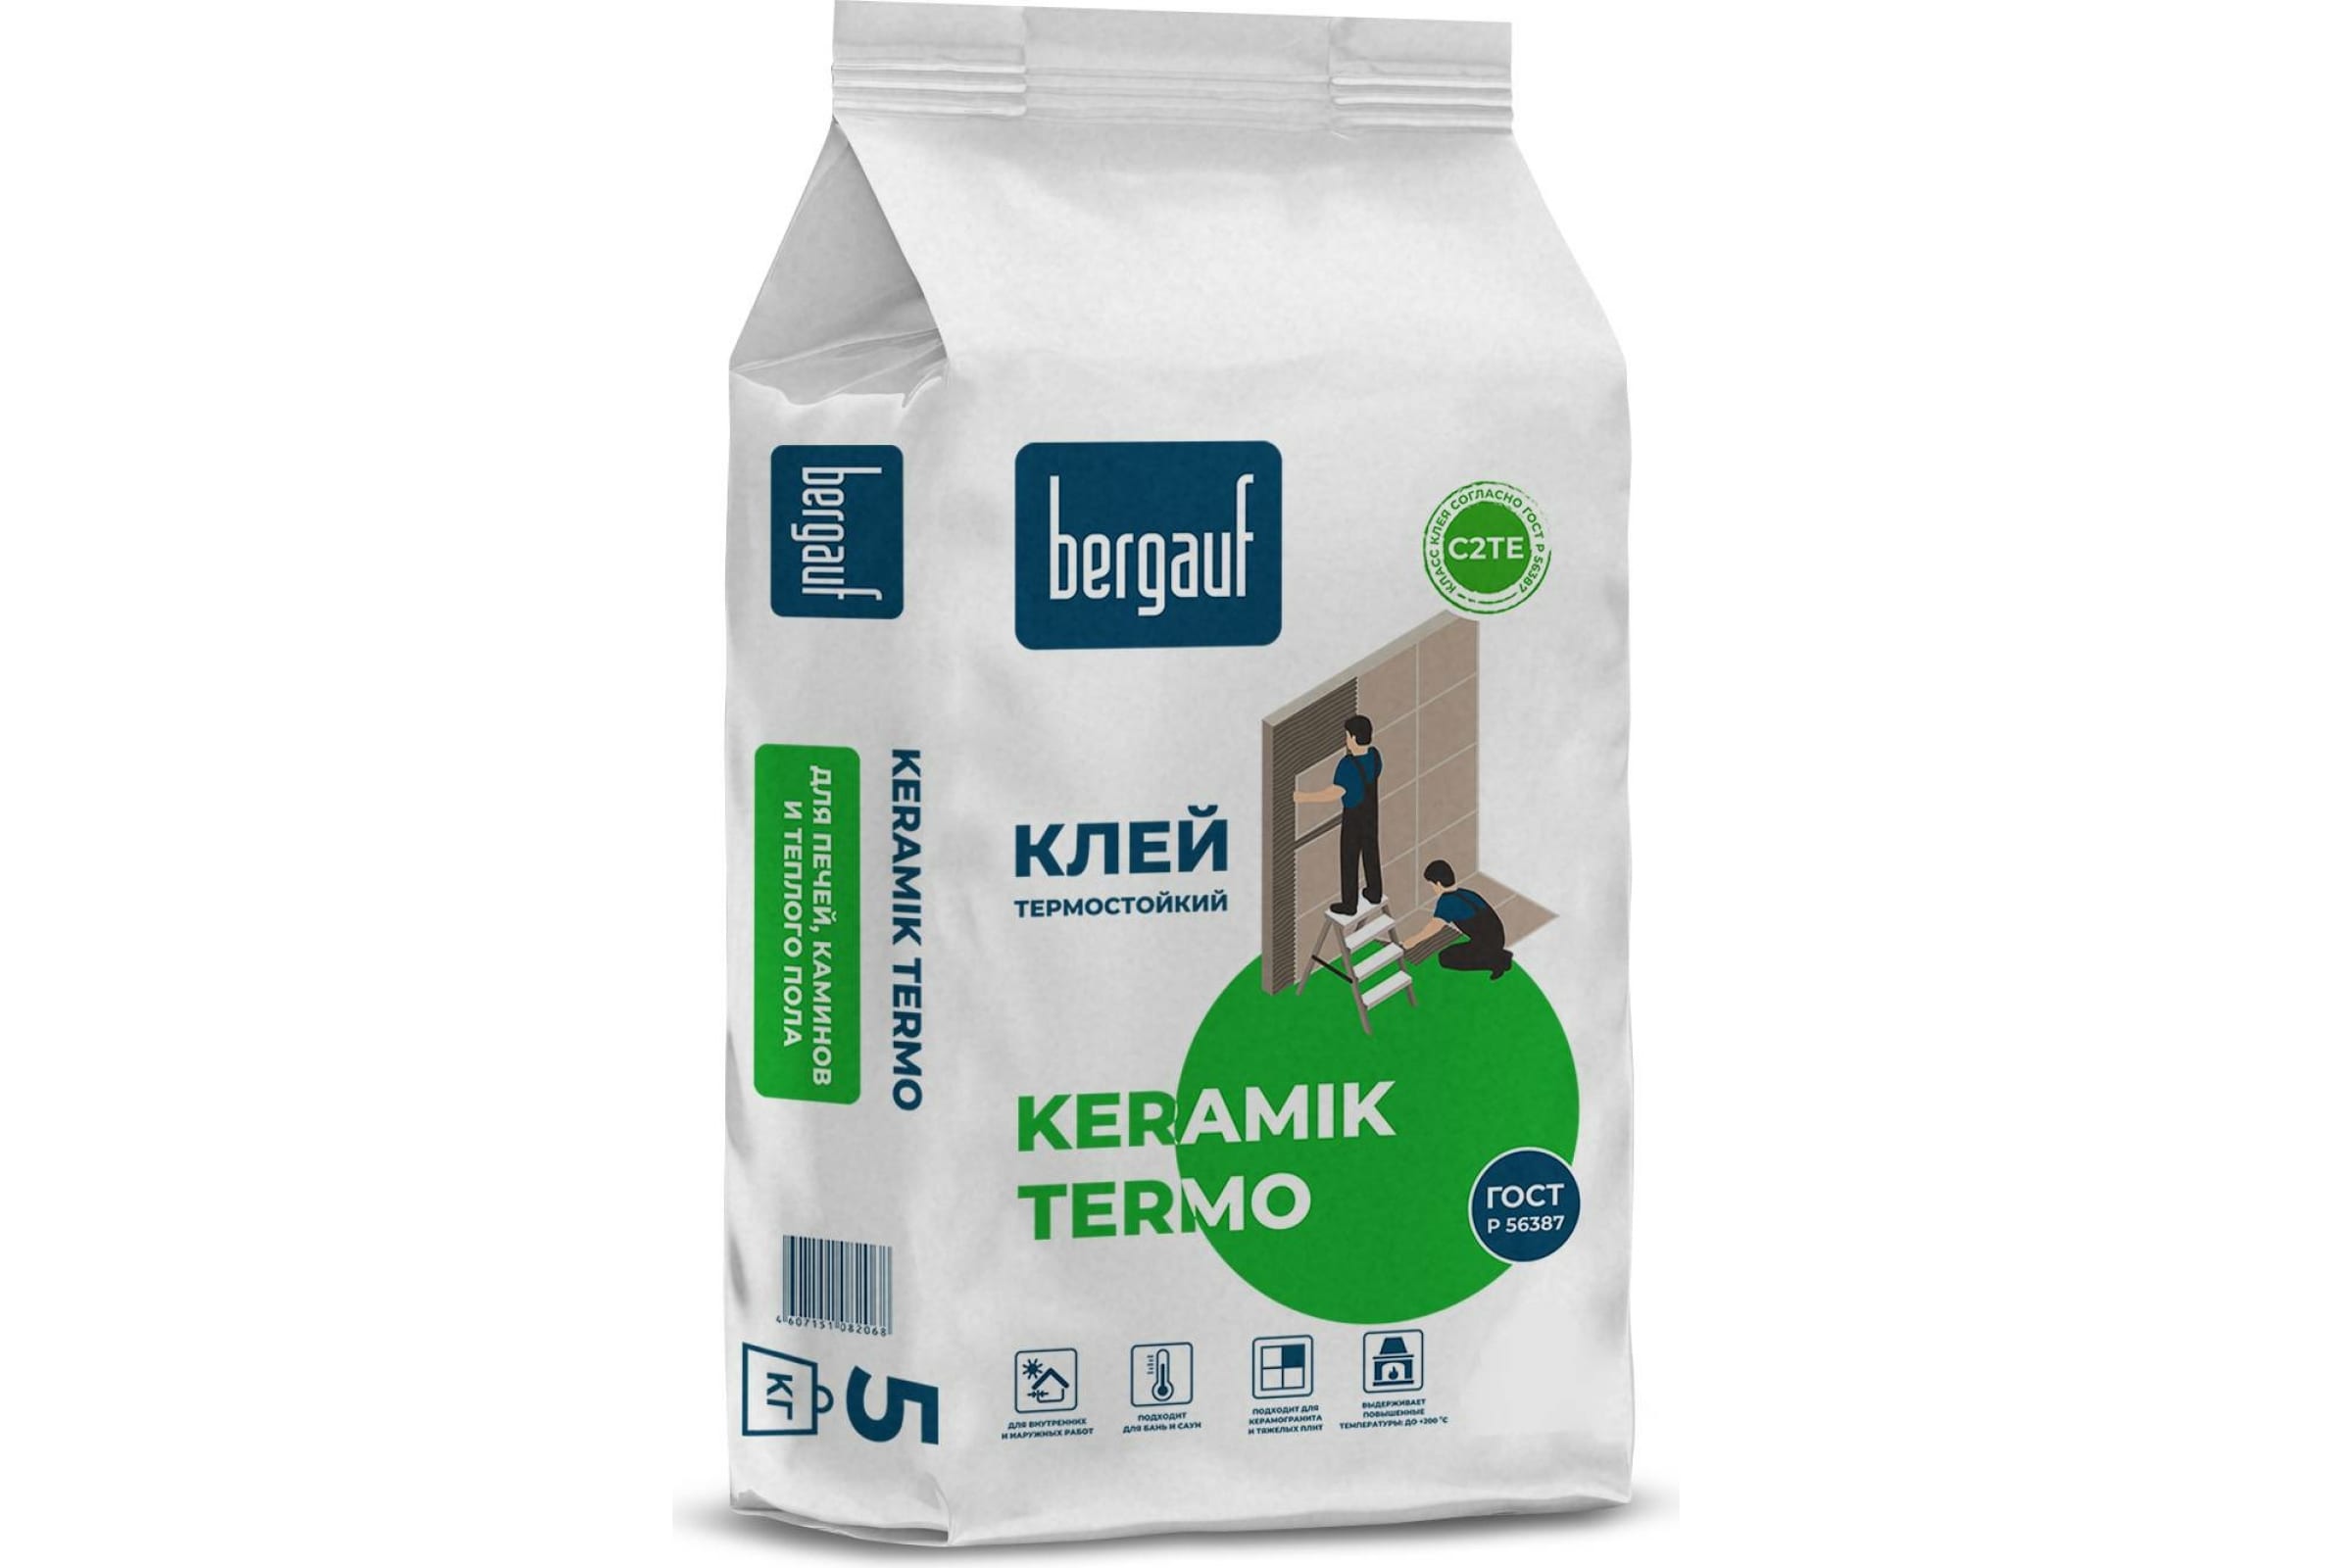 Bergauf Термостойкий клей для печей, каминов и теплого полаKeramik Termo, 5 кг 20732